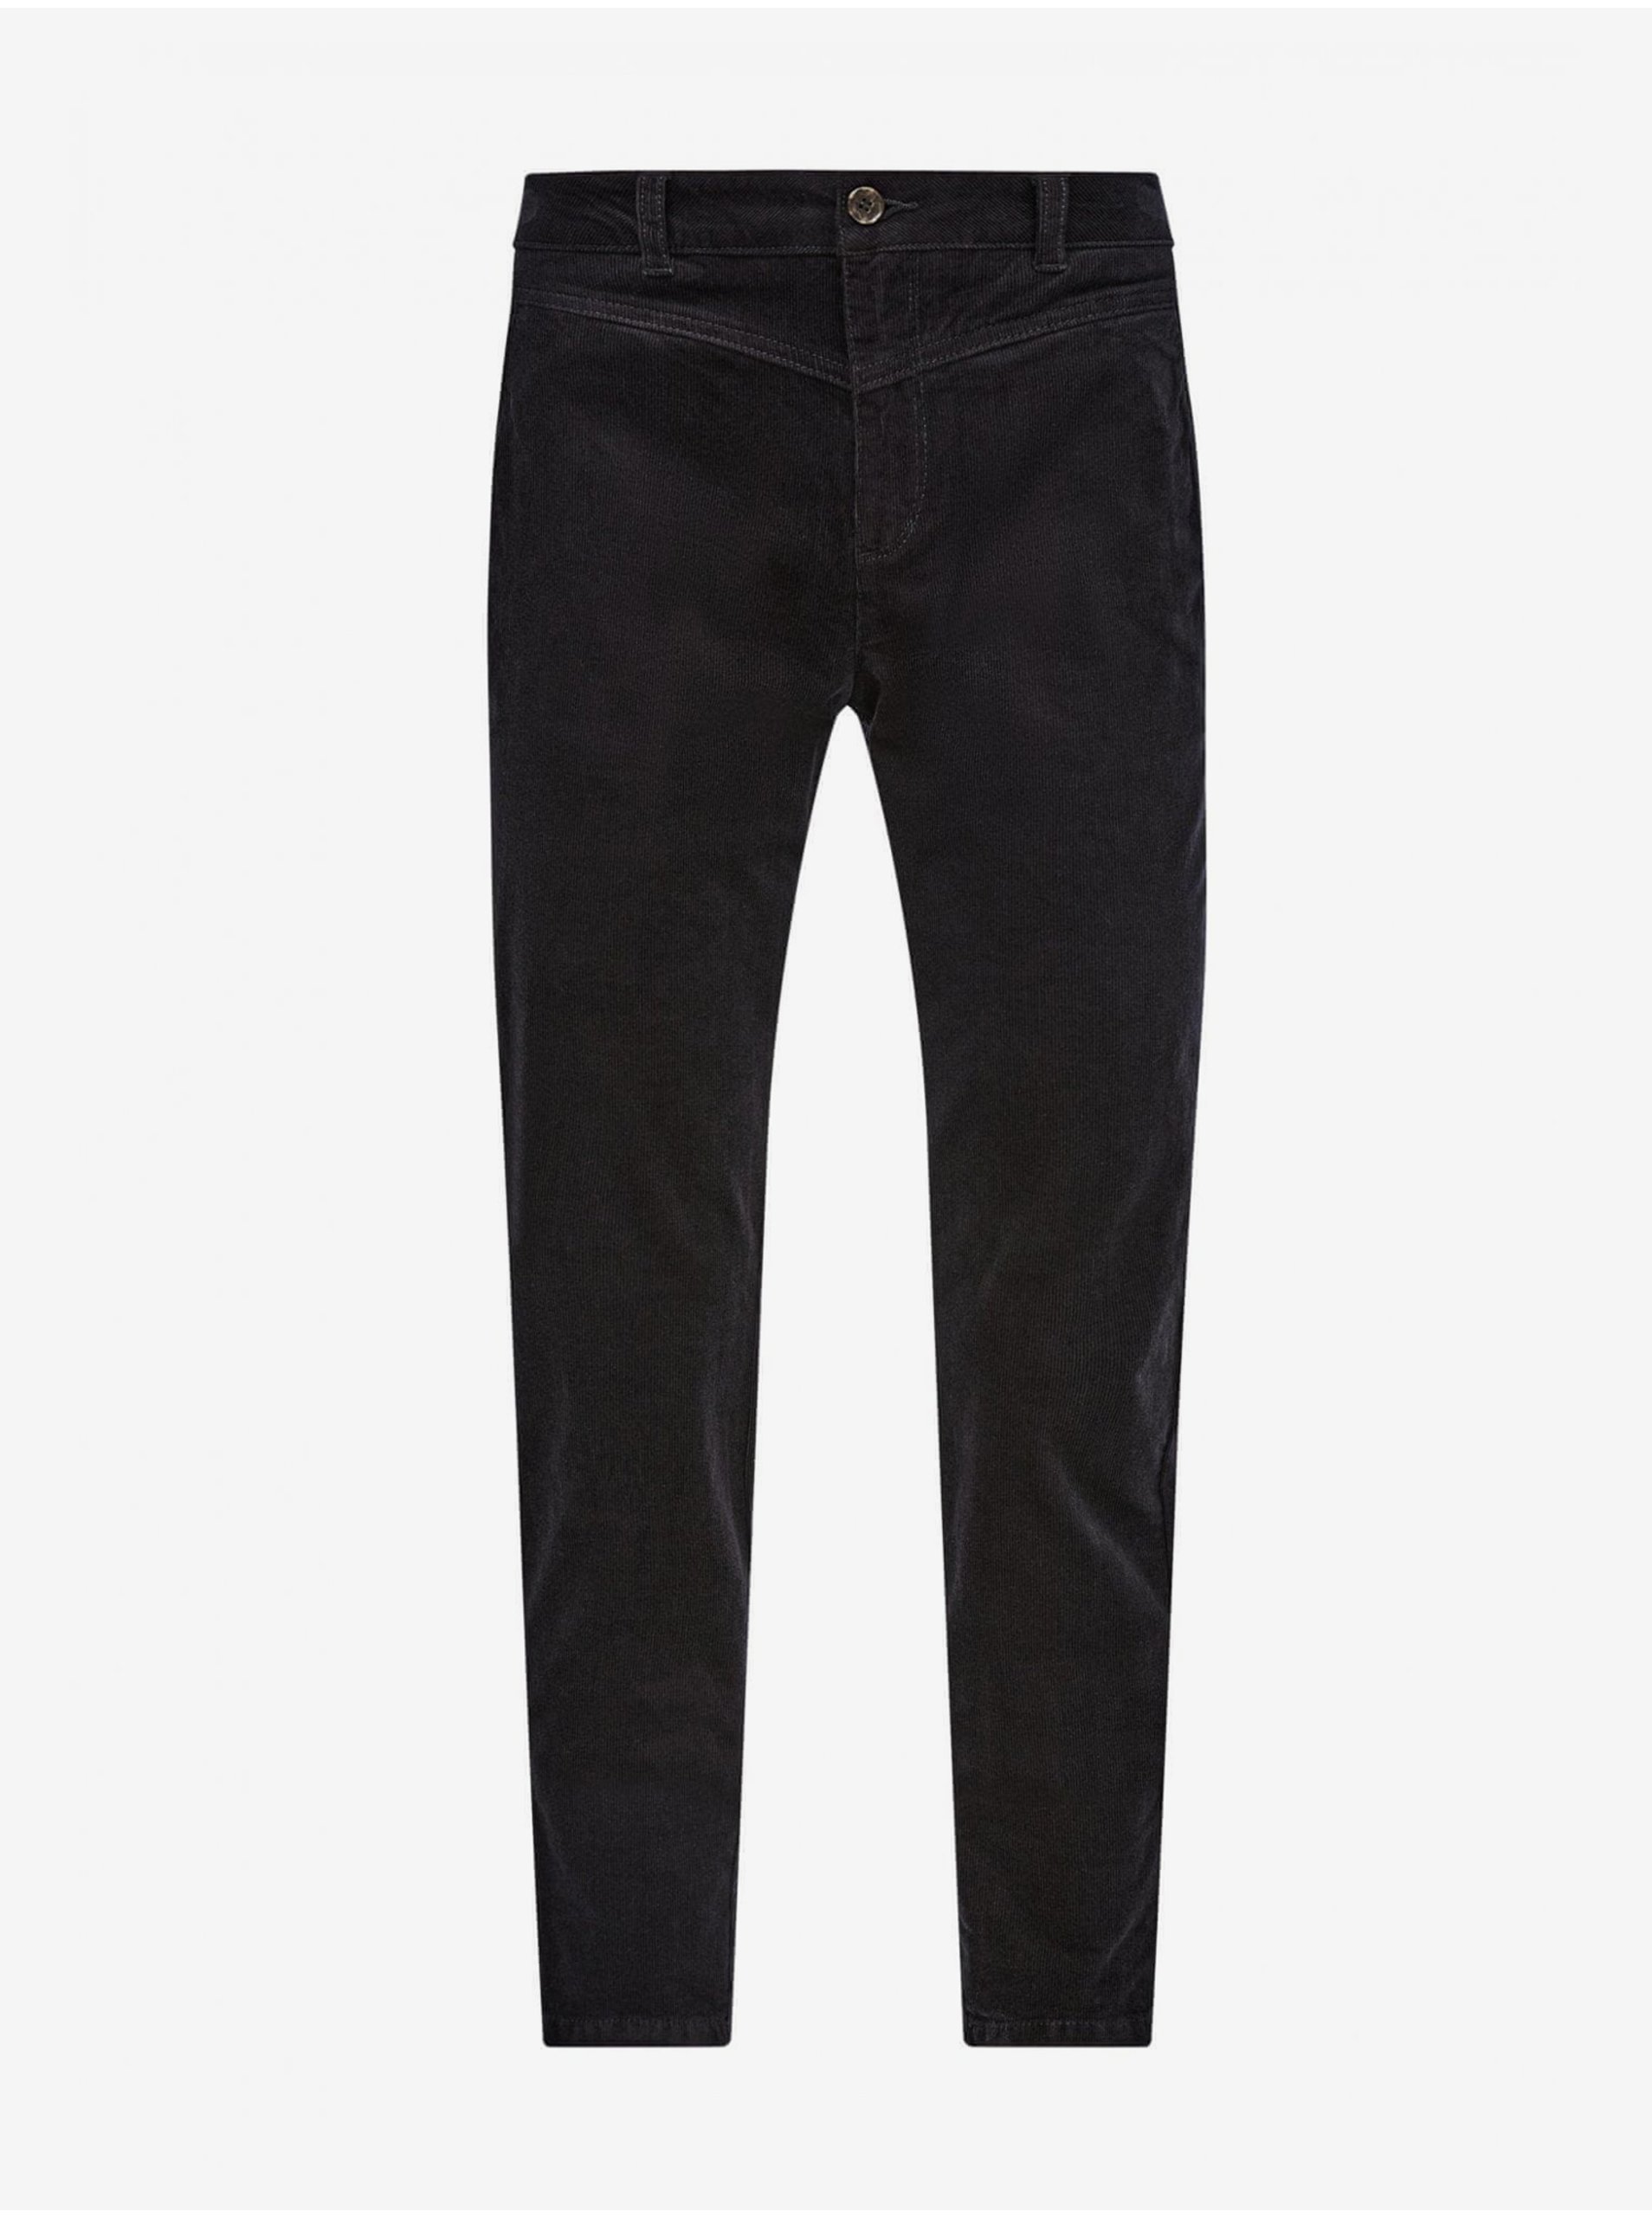 E-shop Černé dámské manšestrové kalhoty s.Oliver